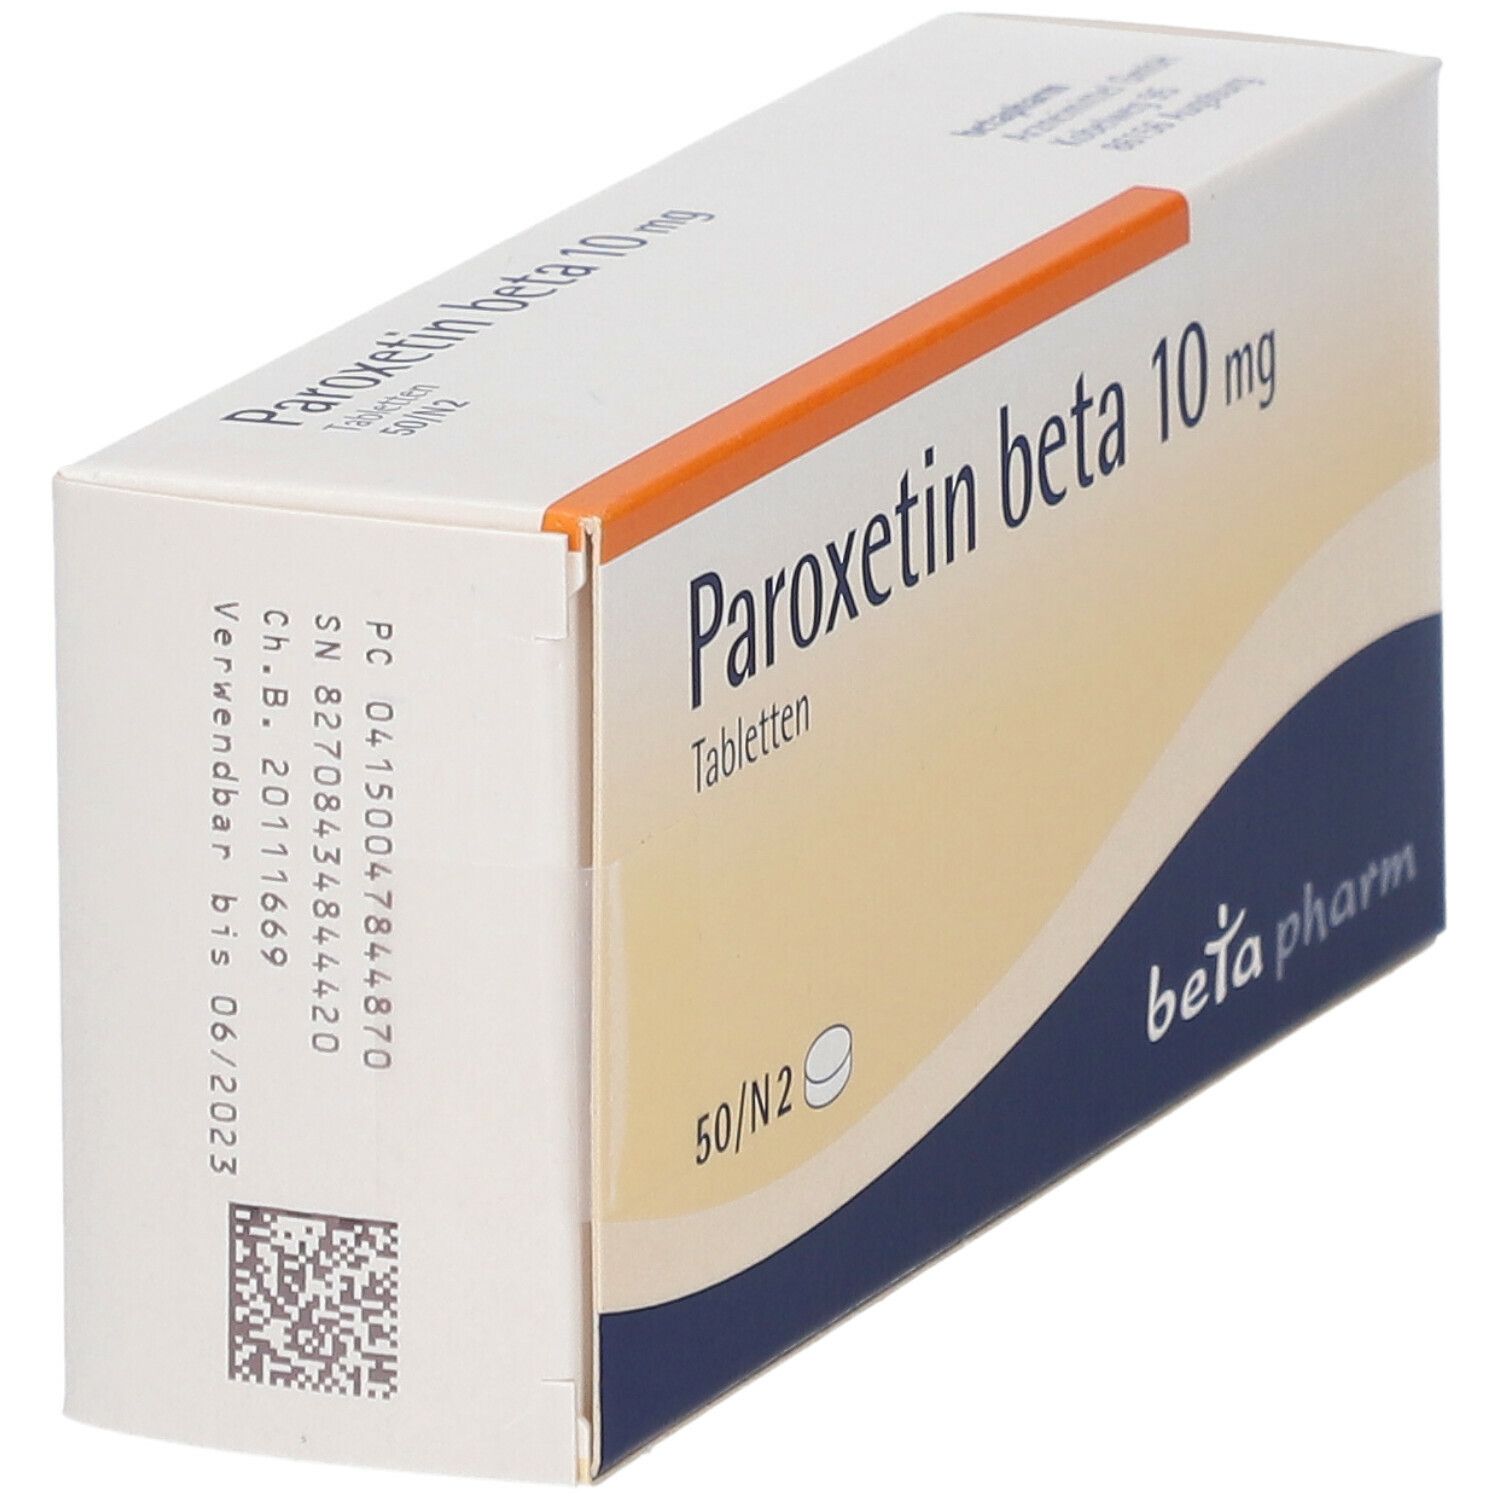 Paroxetin beta 10 mg